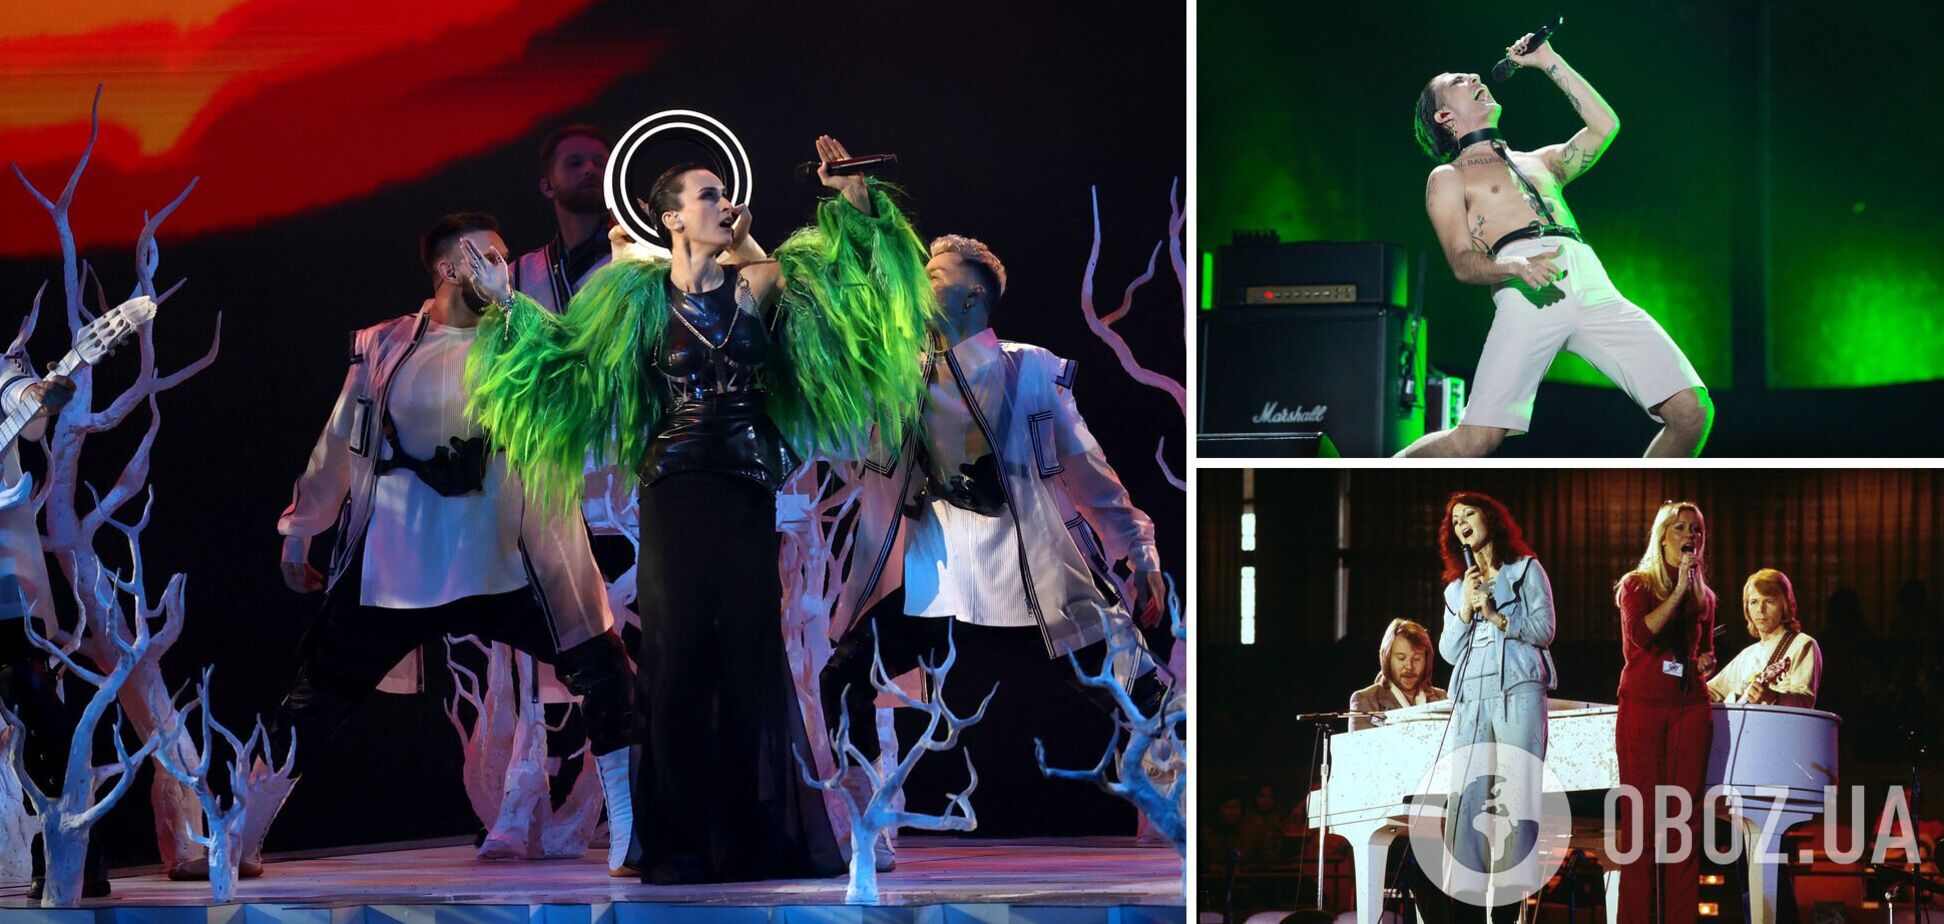 Песня 'Шум' Go_A вошла в топ-3 самых популярных песен за всю историю Евровидения